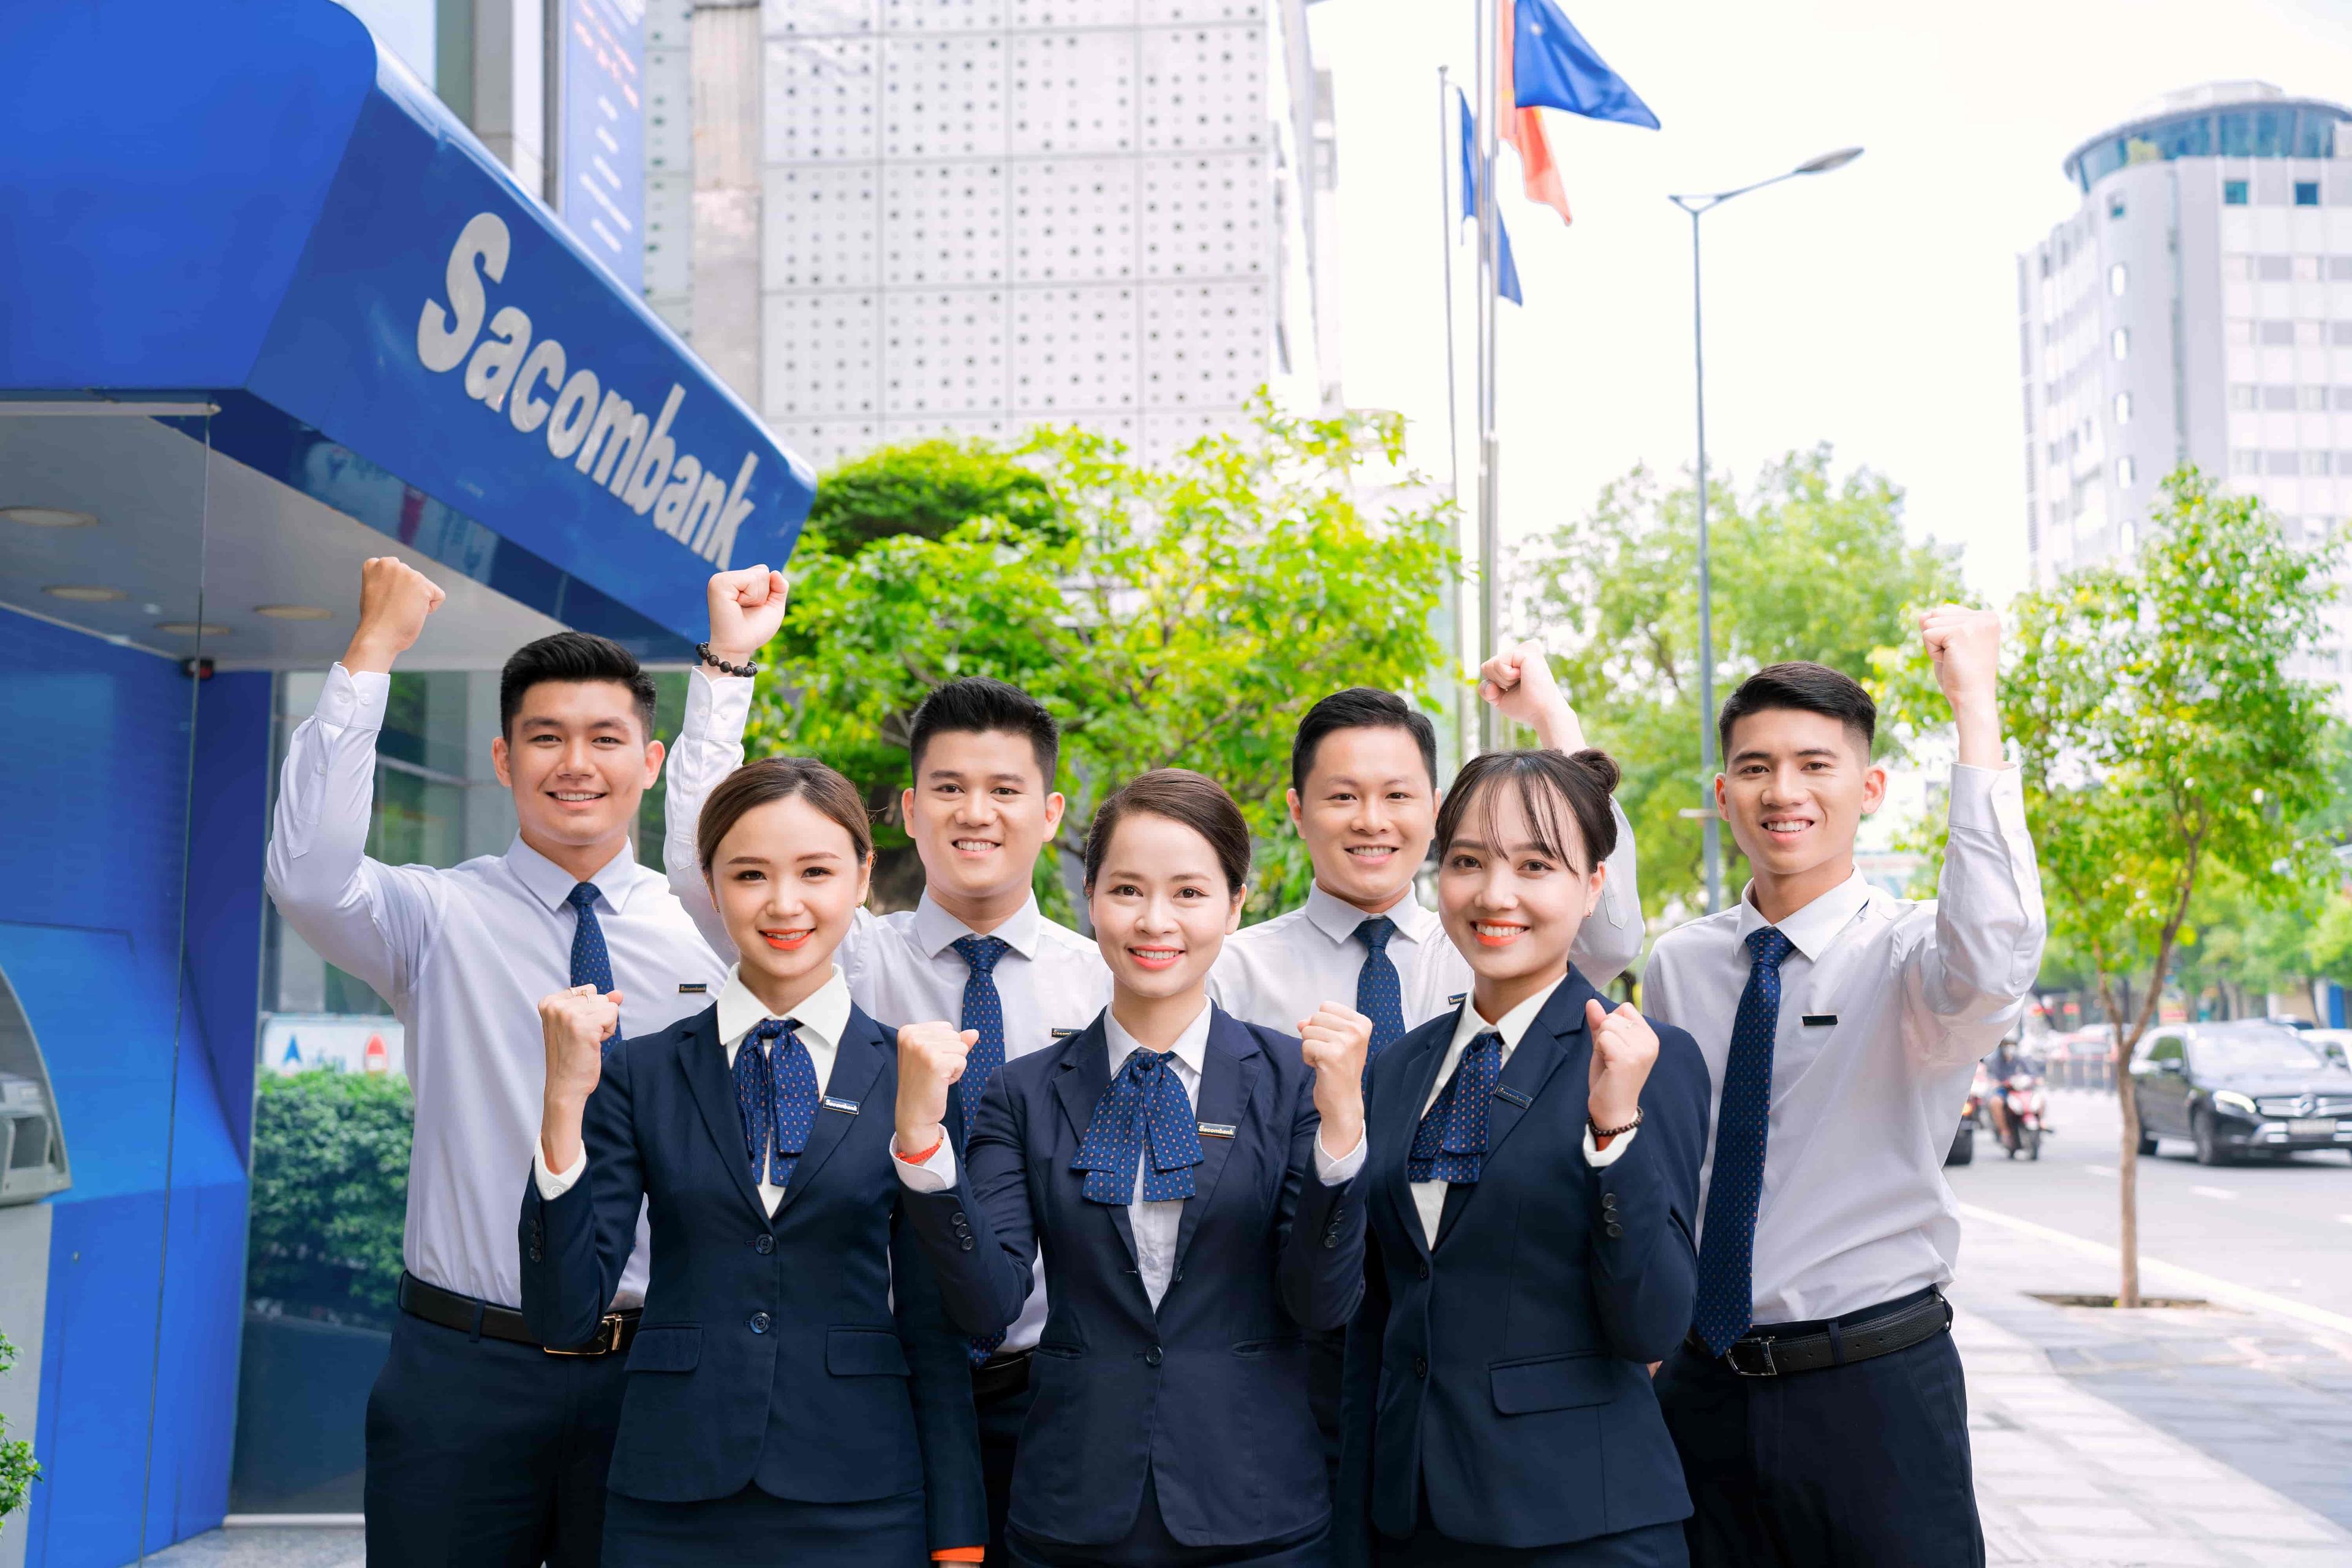 Latest Sacombank – Ngân Hàng TMCP Sài Gòn Thương Tín employment/hiring with high salary & attractive benefits